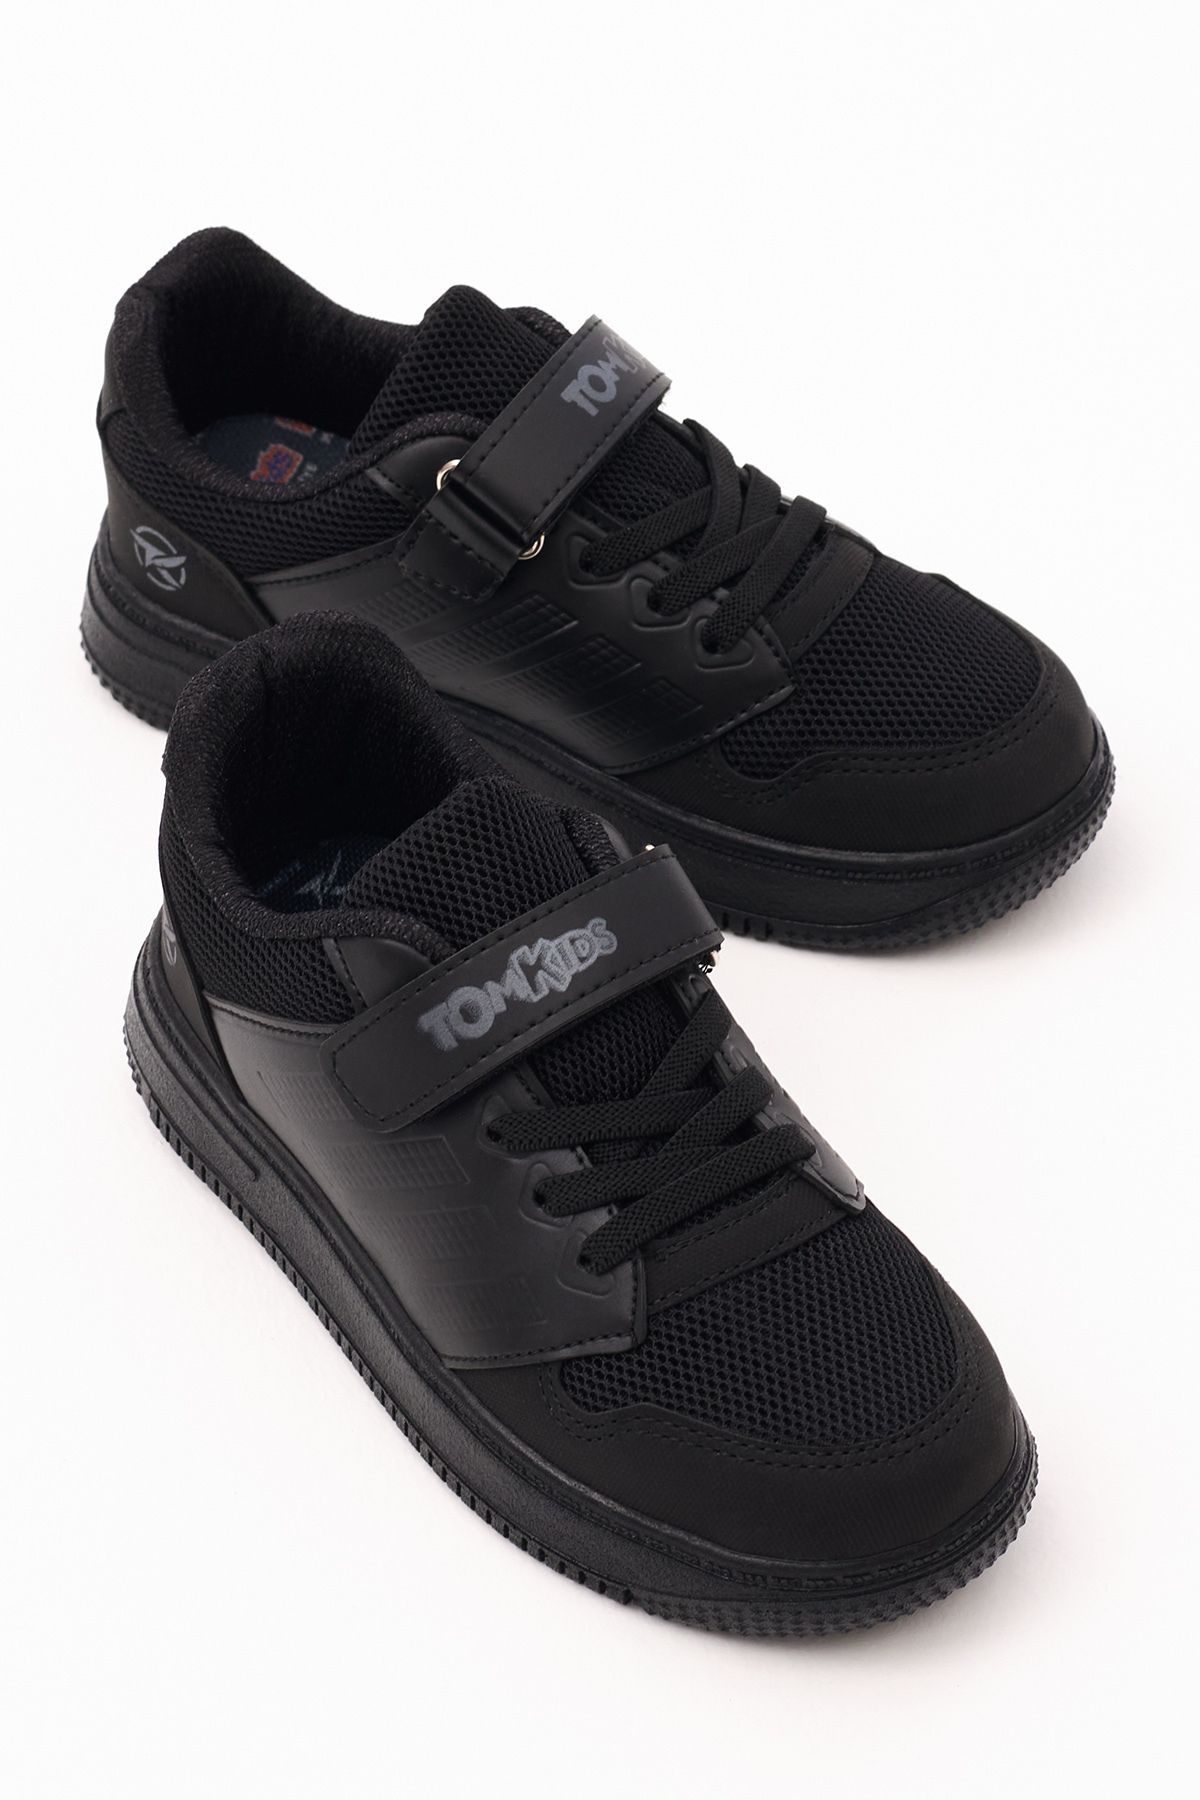 Tonny Black Çocuk Unisex Siyah Siyah Rahat Kalıp Yanı Şerit Detaylı Bağcıklı Ve Cırtlıı Spor Ayakkabı